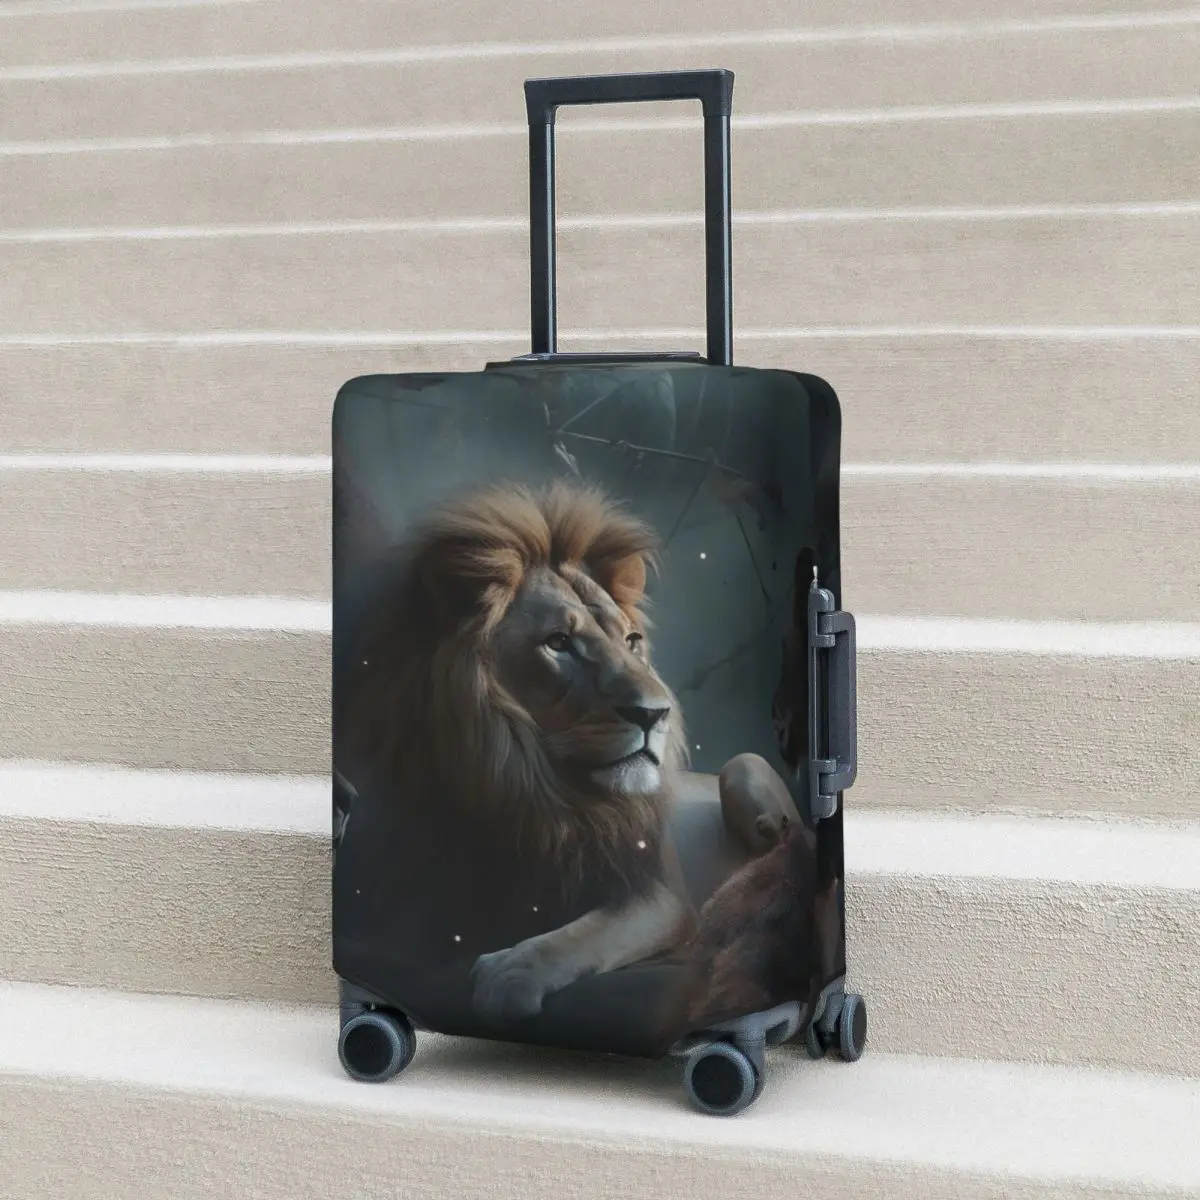 

Чехол для чемодана с изображением Льва мистические Realms защита для путешествий и путешествий